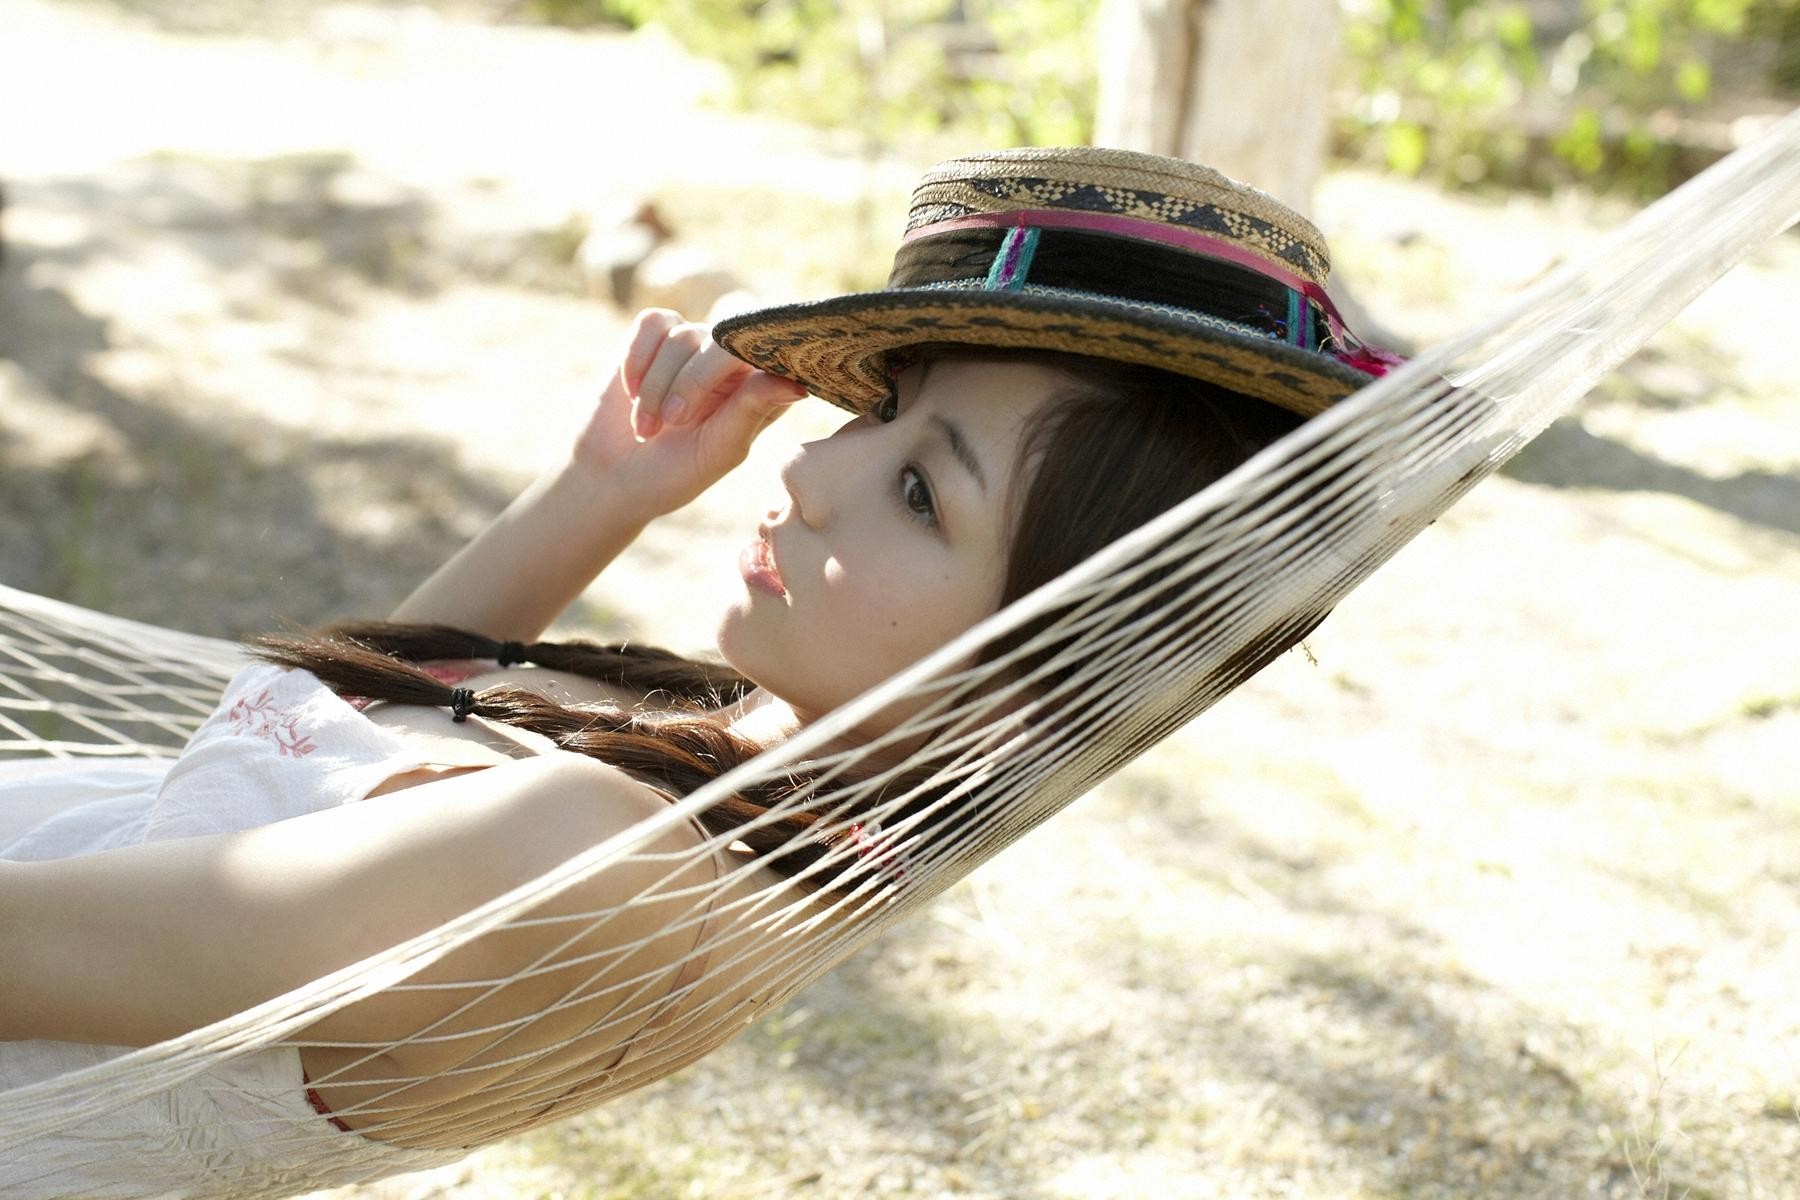 People 1800x1200 Asian women Yumi Sugimoto model face women outdoors hammocks women with hats hat brunette Japanese women looking away